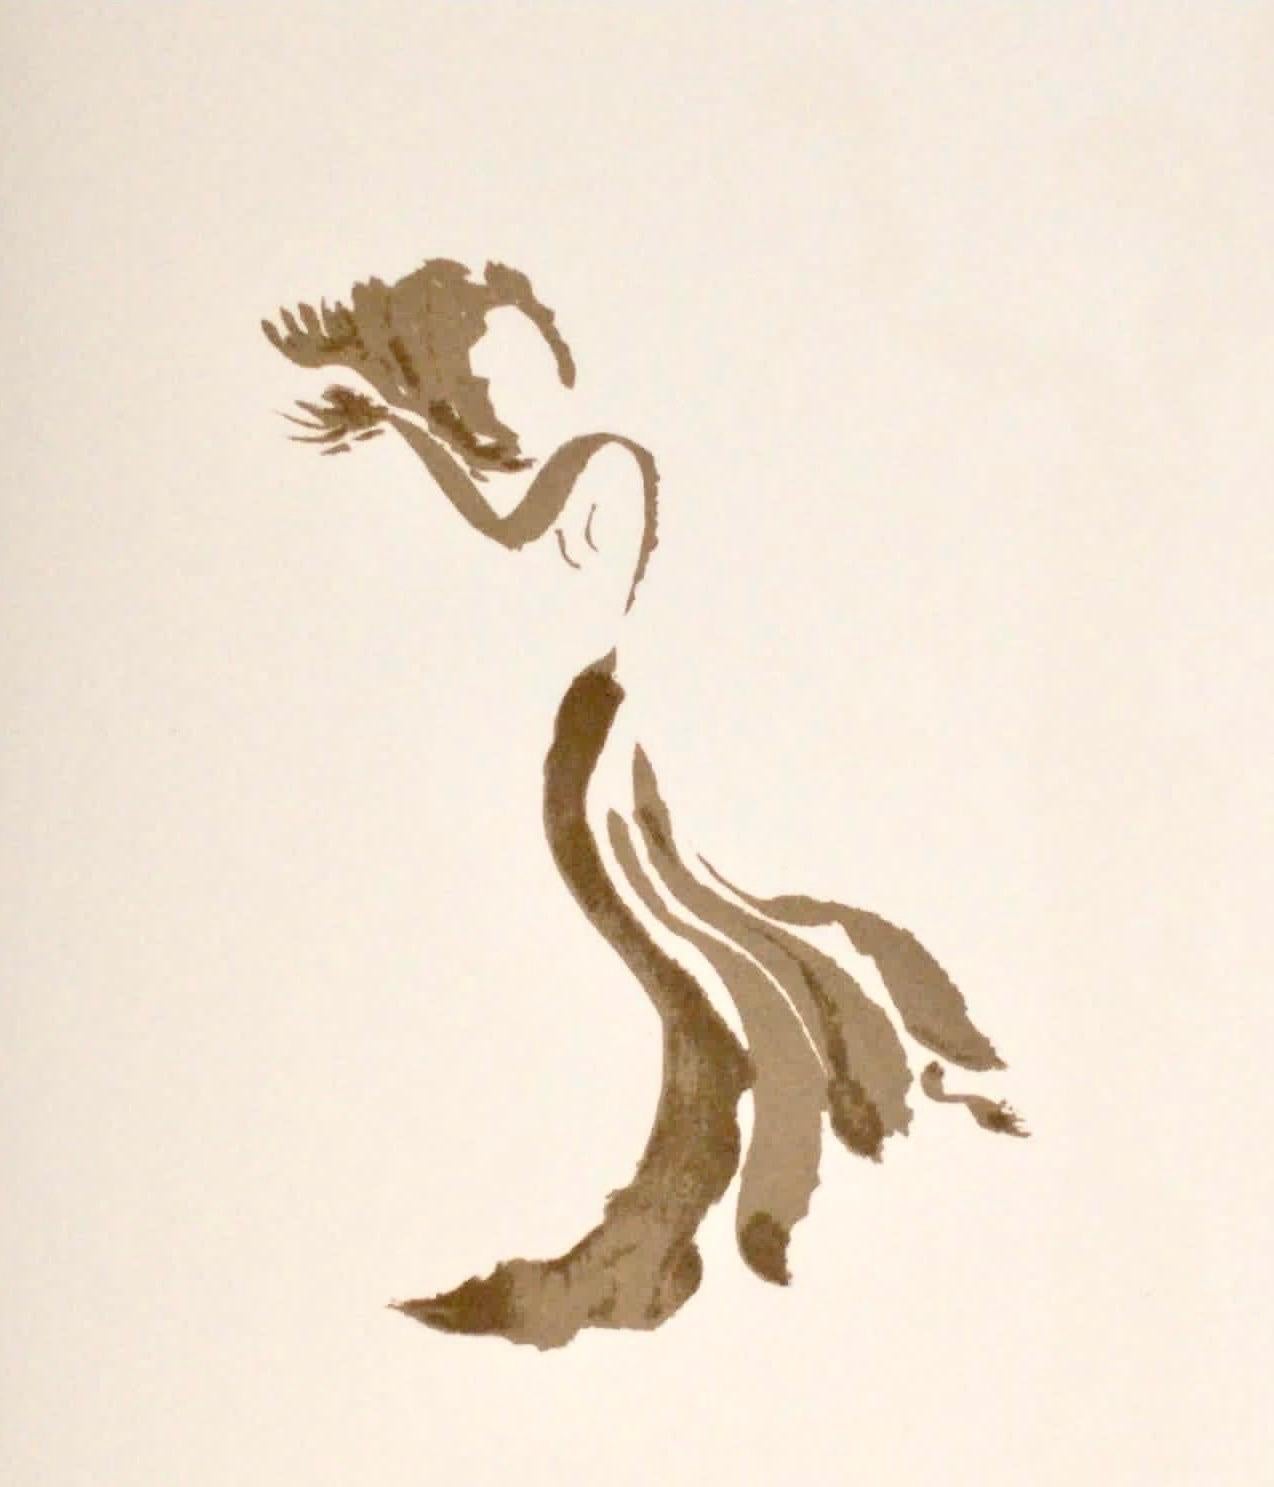 Apeles Fenosa, sculpteur espagnol Mourlot, lithographie - Figures expressionnistes abstraites - Print de Apelles Fenosa